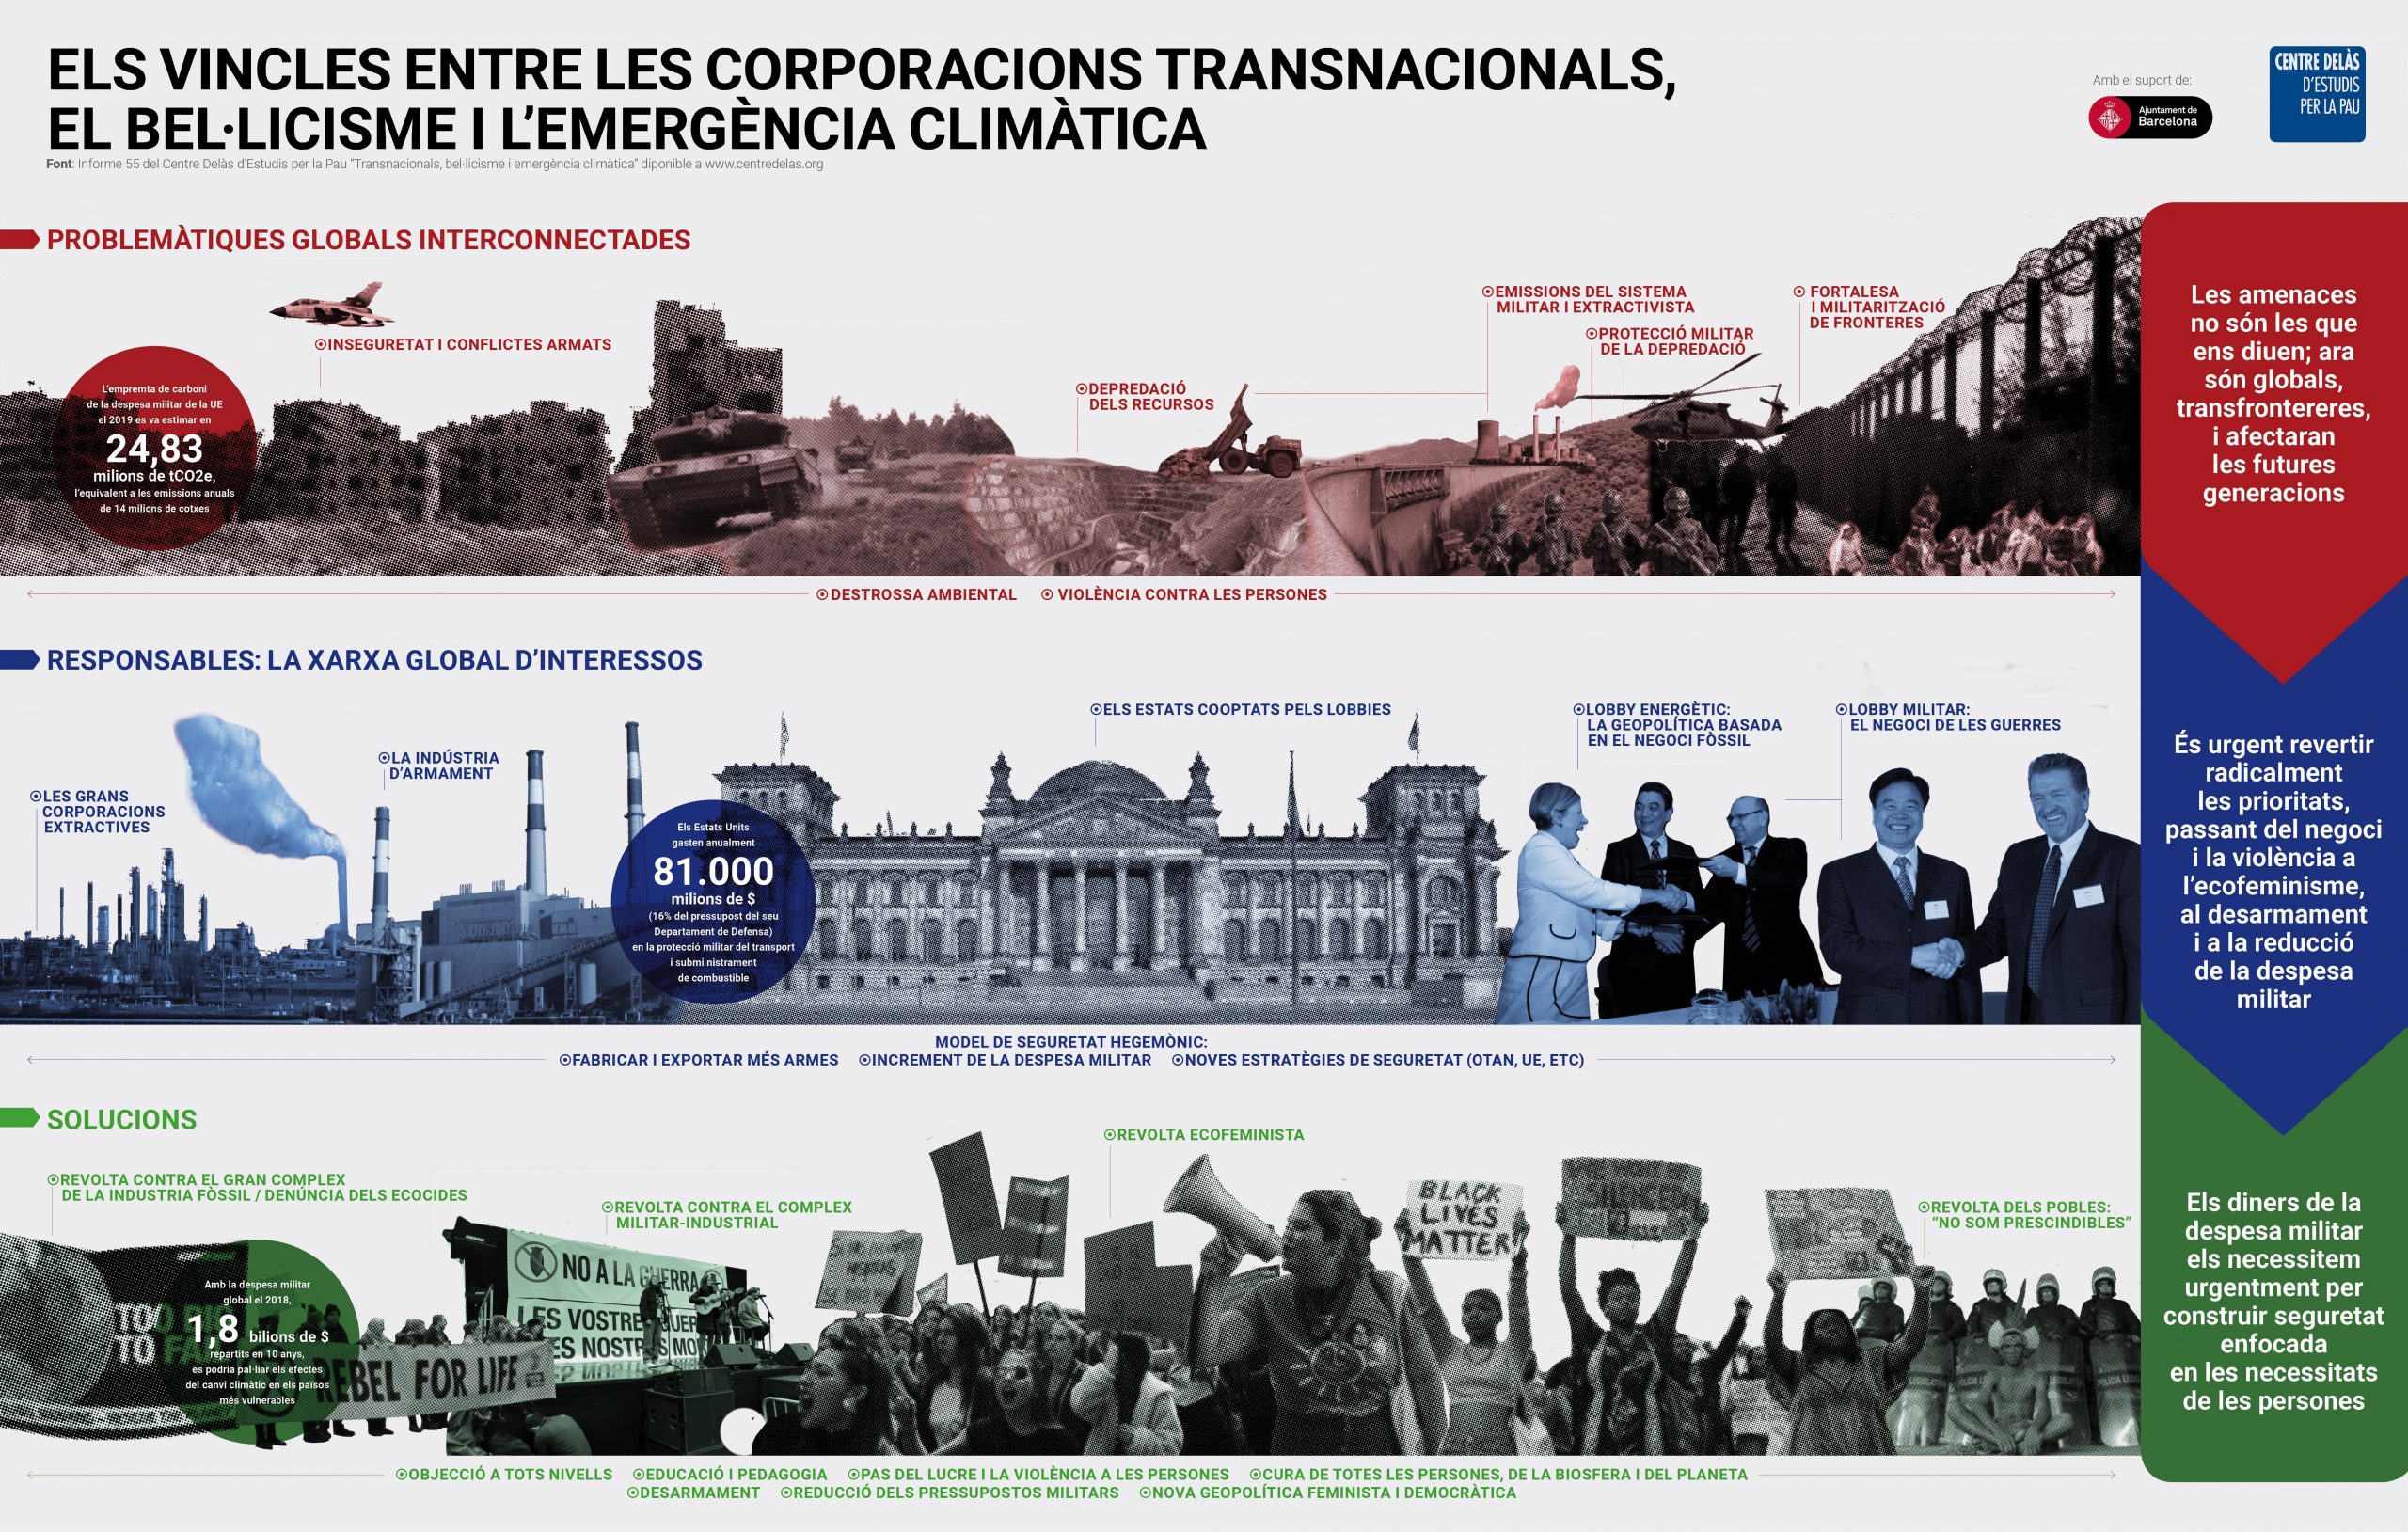 Infografia “Els vincles entre les corporacions transnacionals, el bel·licisme i l’emergència climàtica”